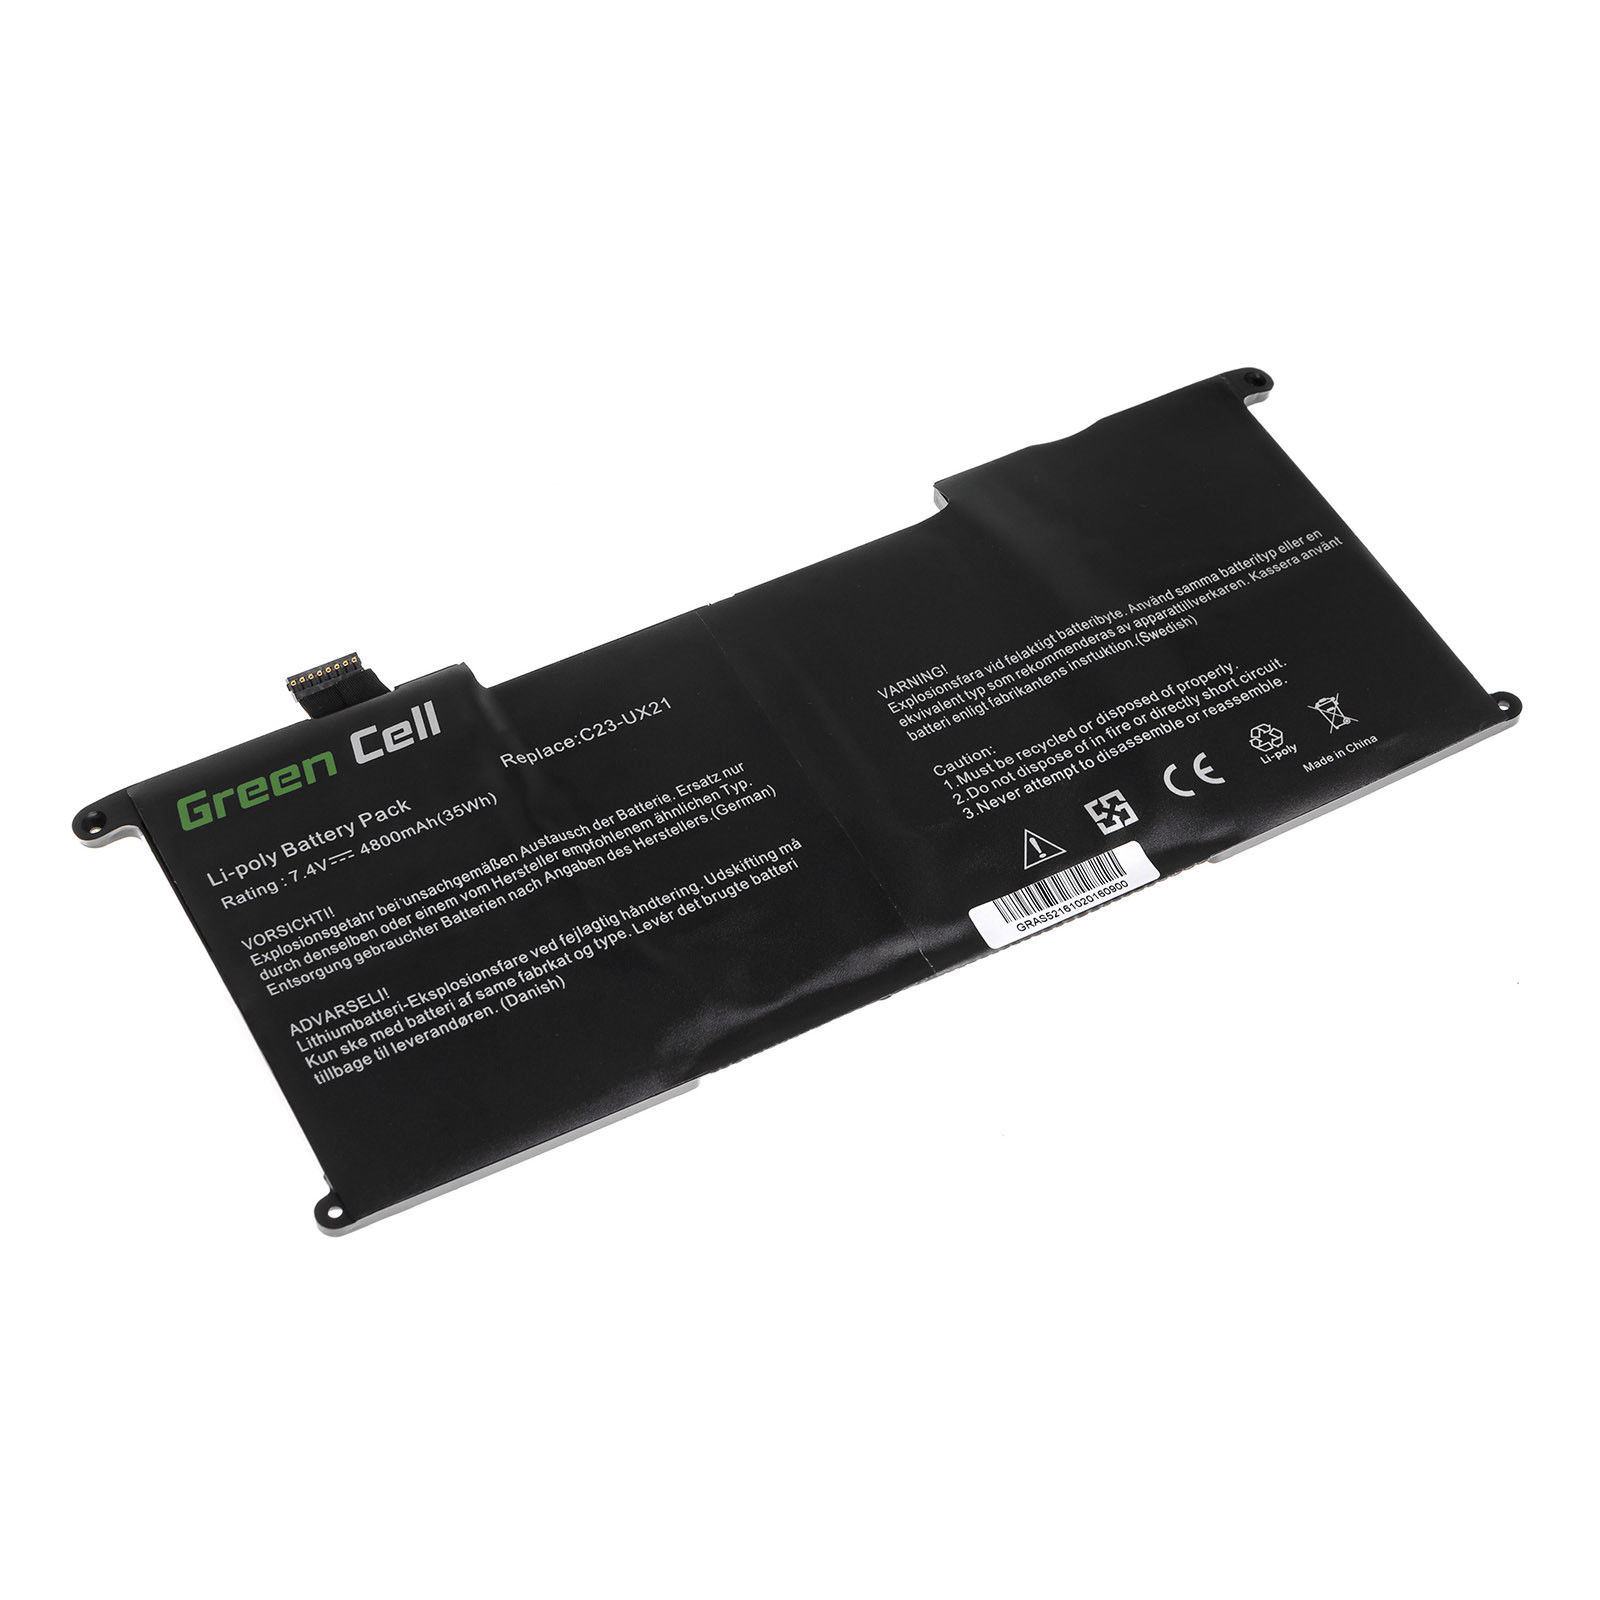 Bateria para Asus UX21 Ultrabook UX21 UX21A UX21E UX21E-DH52 C23U